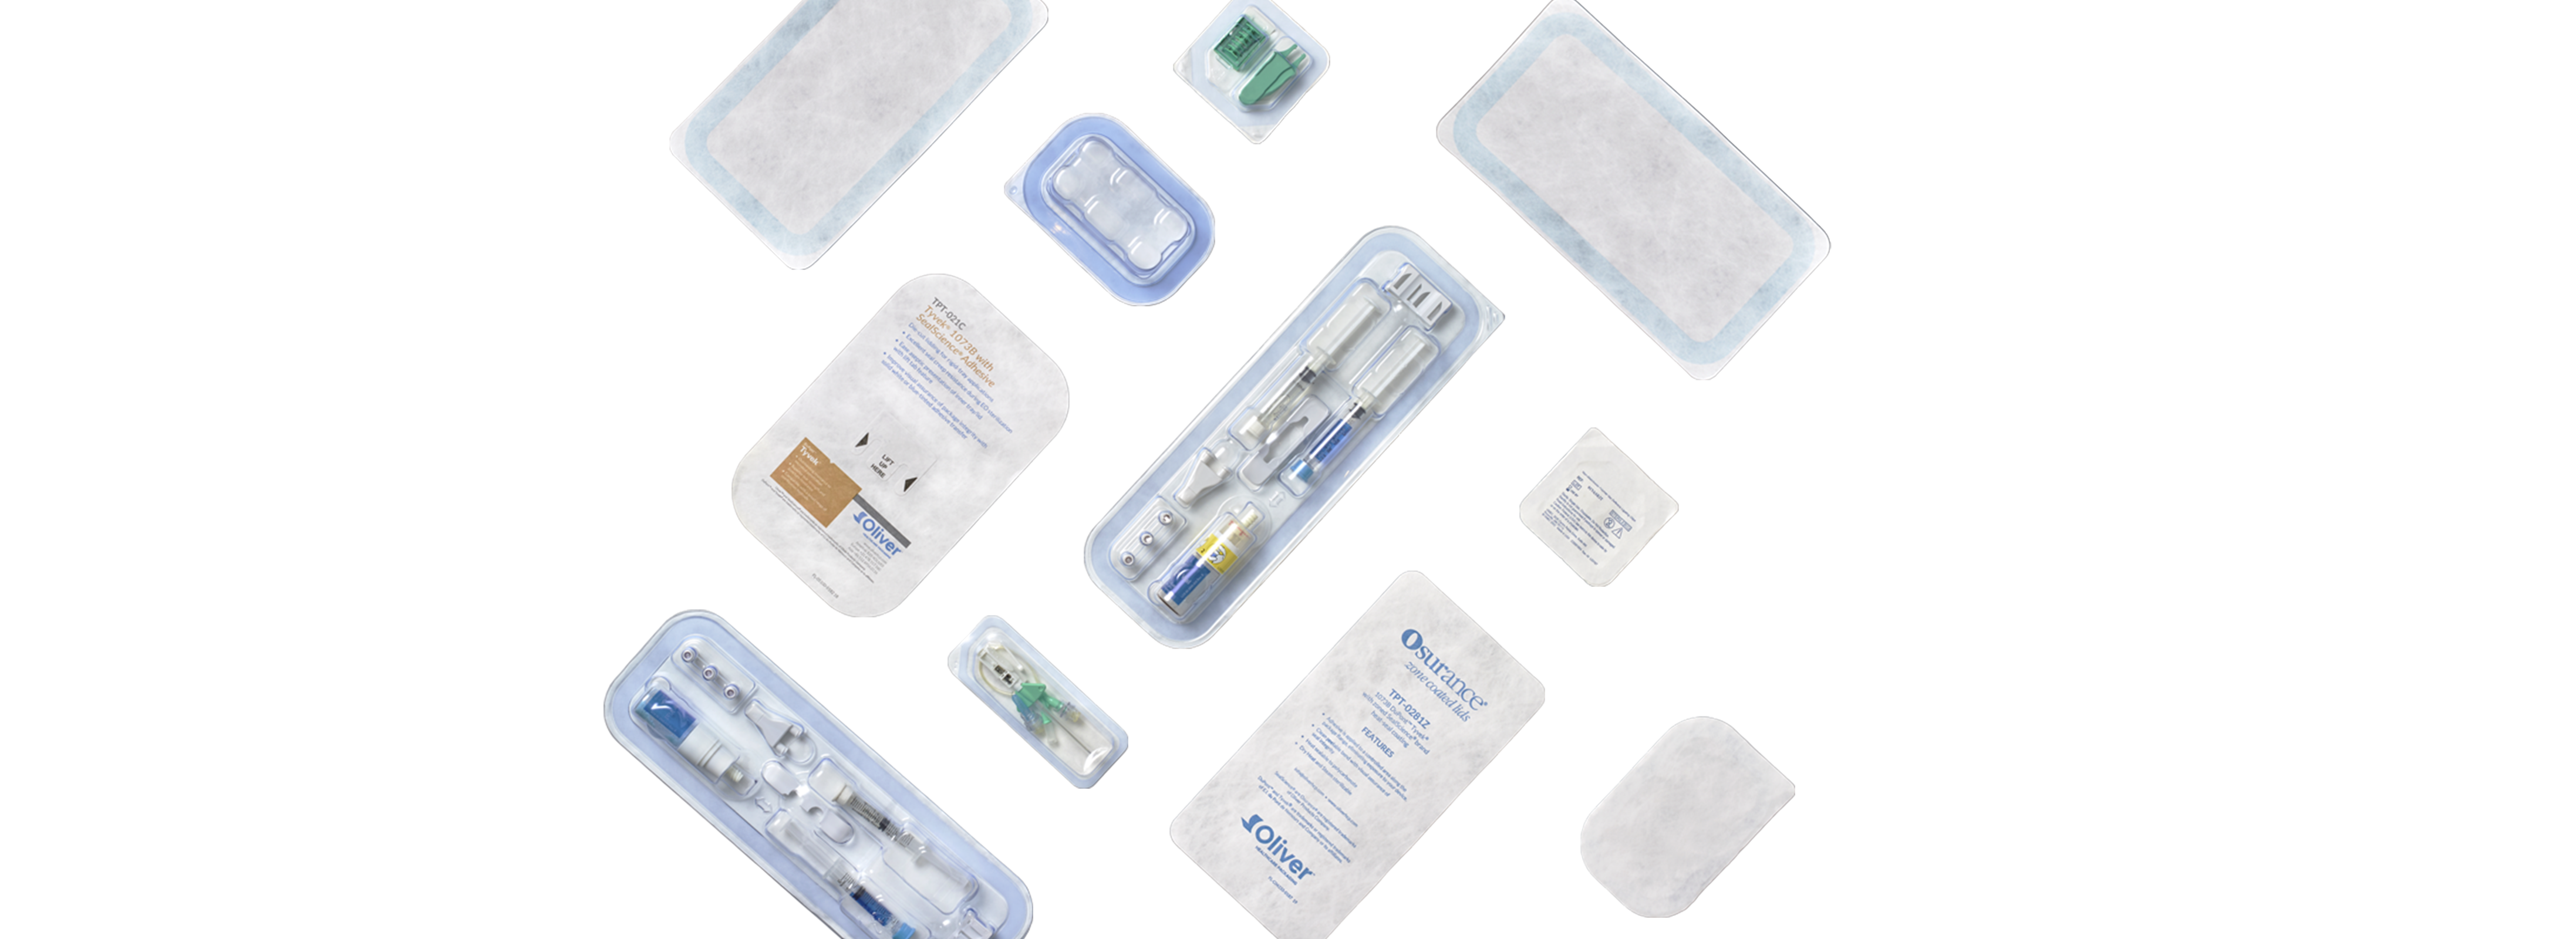 Gestanzte Deckel für medizinische Verpackungen | Oliver Healthcare Packaging